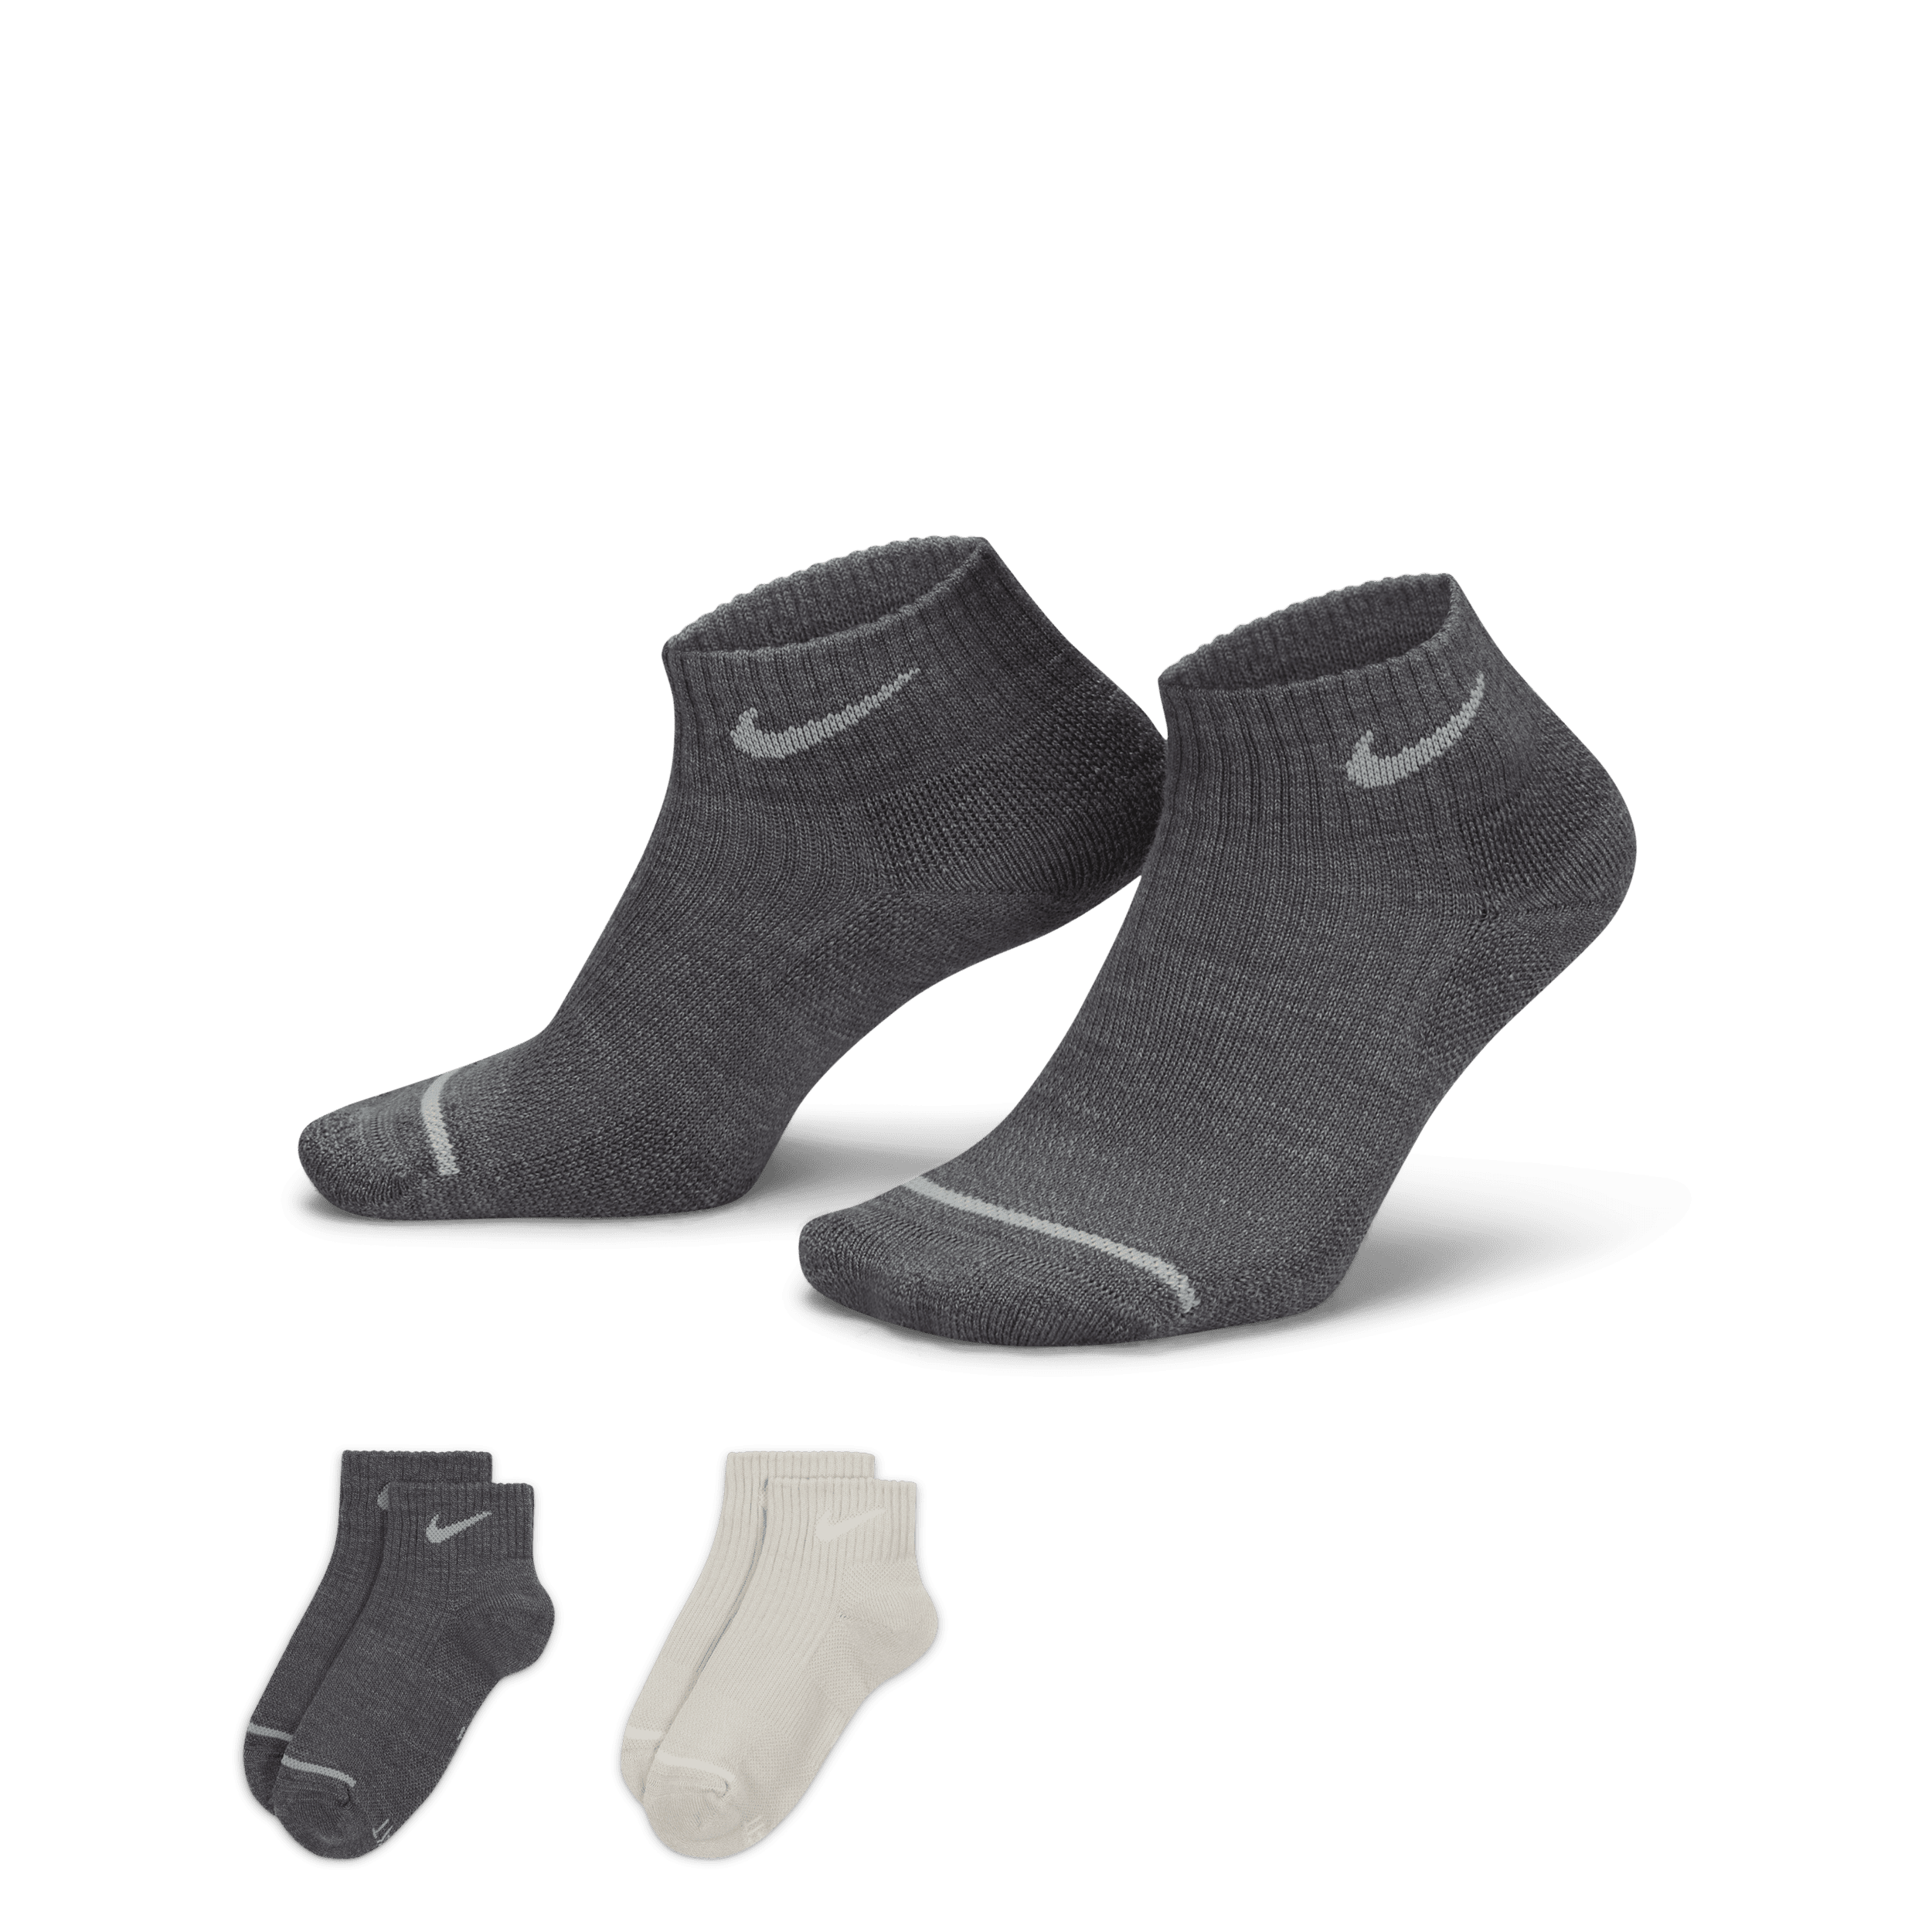 Calze alla caviglia ammortizzate Nike Everyday Wool (2 paia) - Multicolore